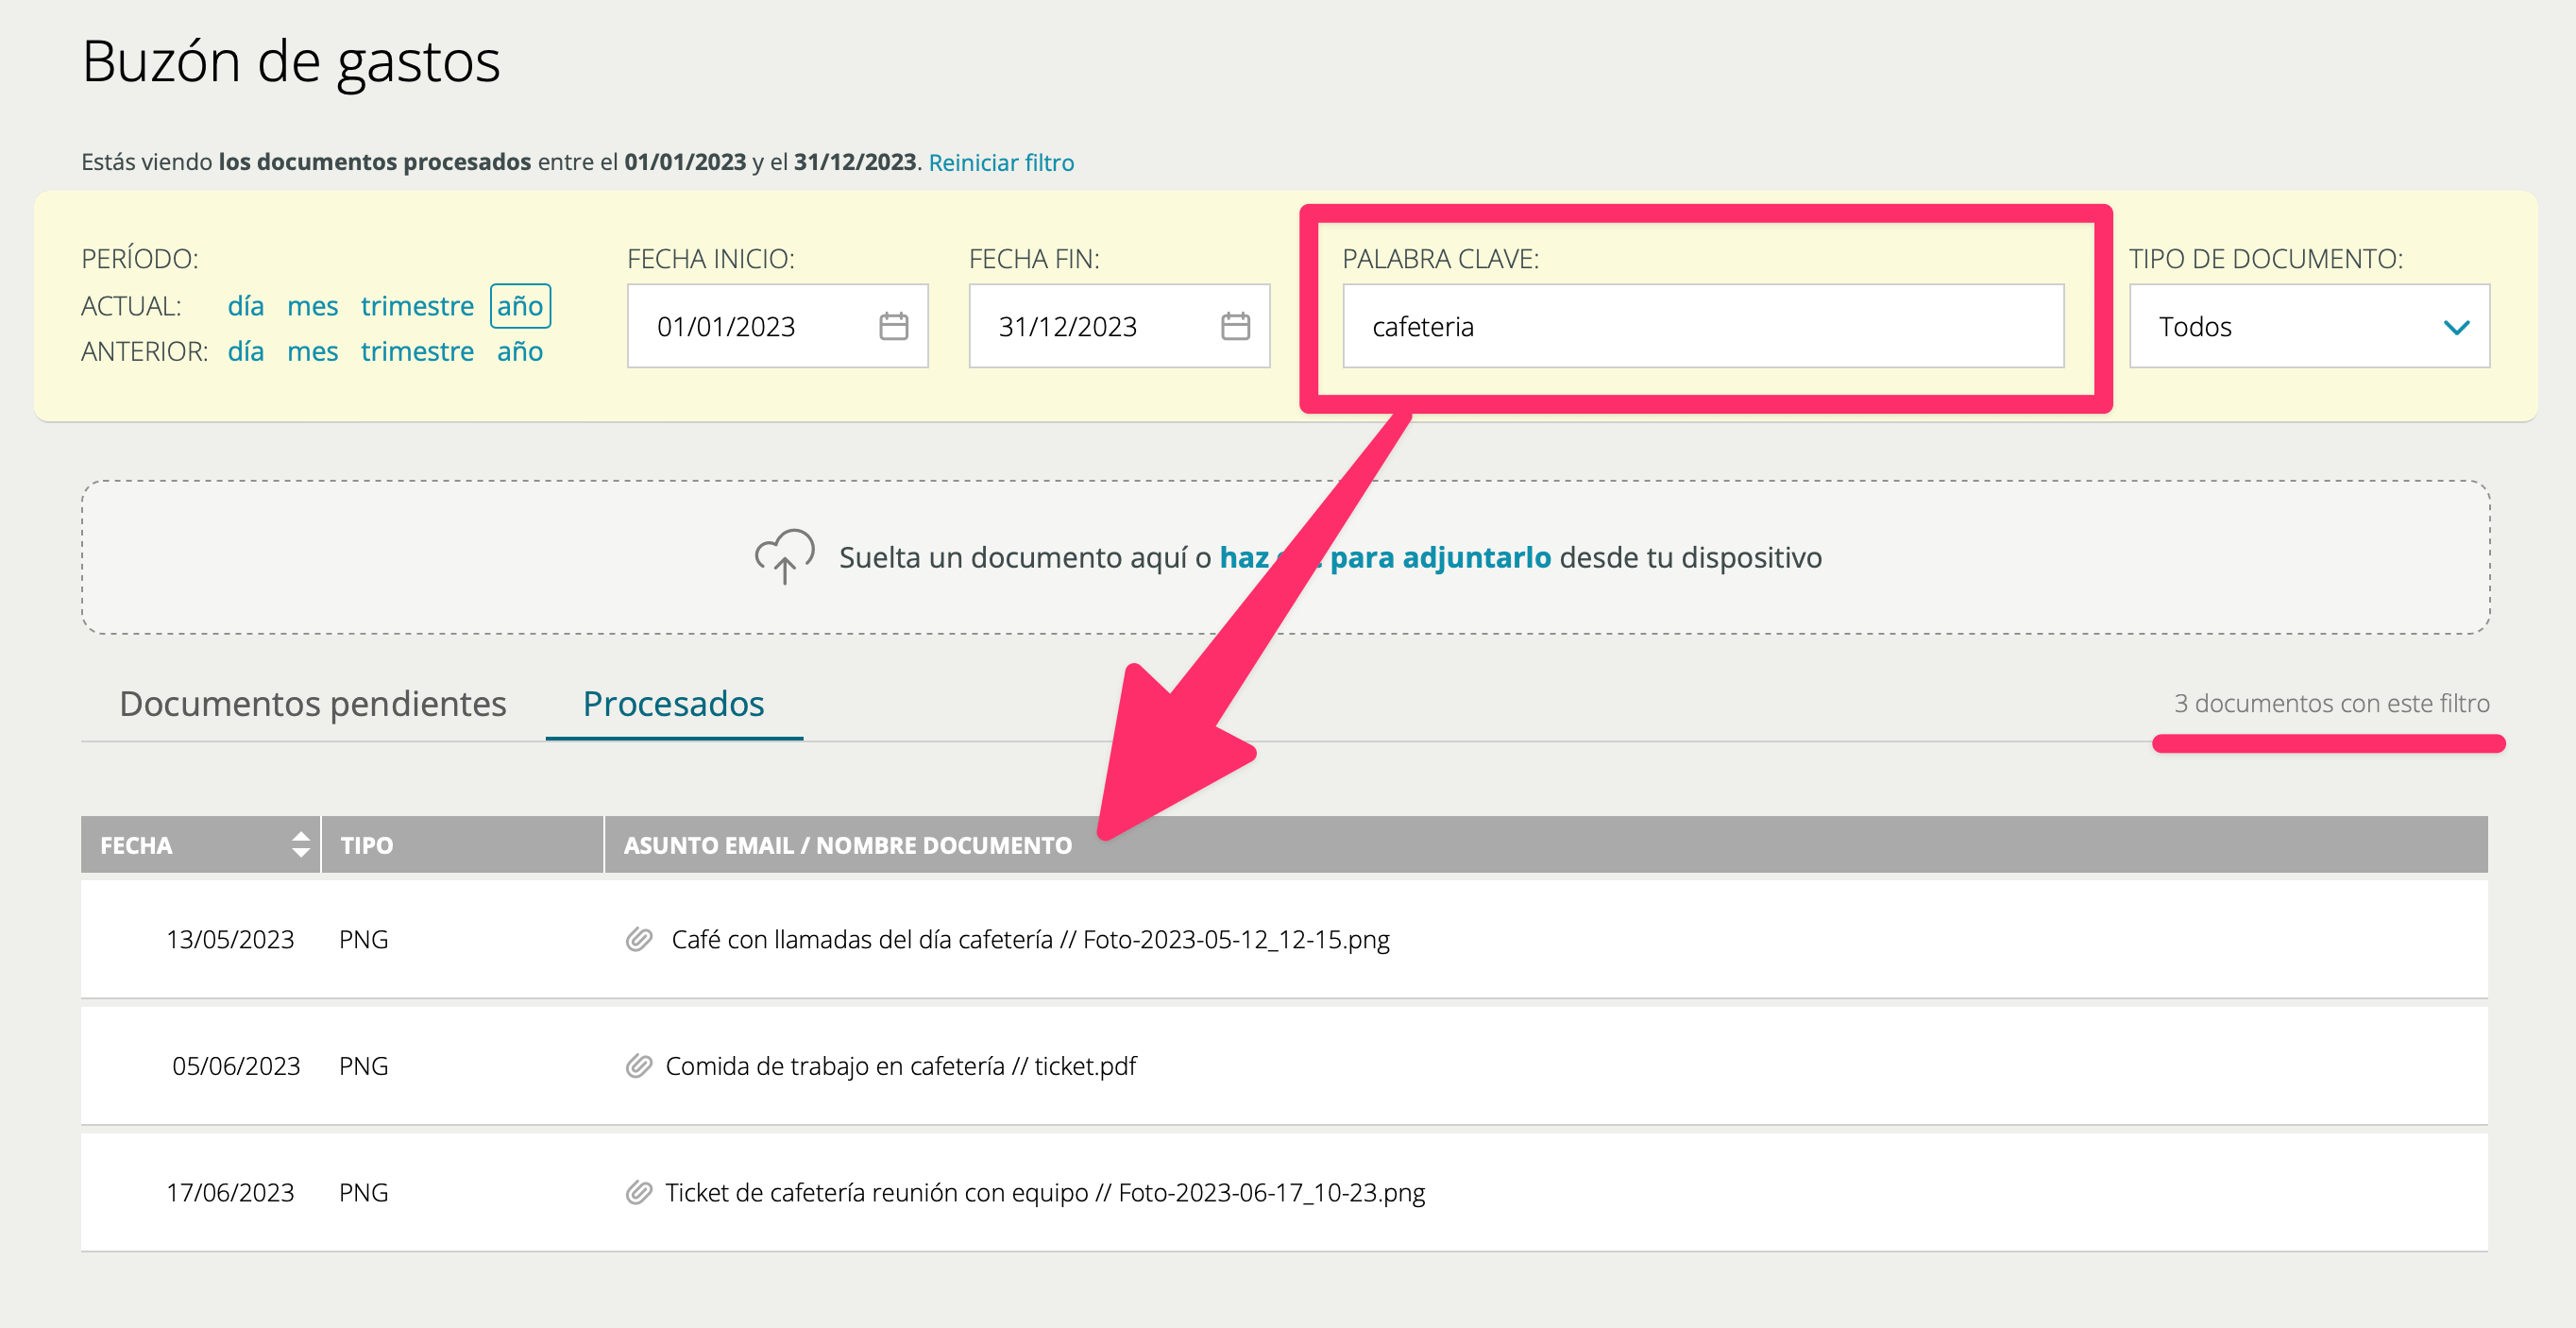 Captura de pantalla del buzón de gastos en Cuéntica mostrando cómo utilizar el buscador por palabra clave para encontrar rápidamente los documentos que te has reenviado o que has subido al buzón.